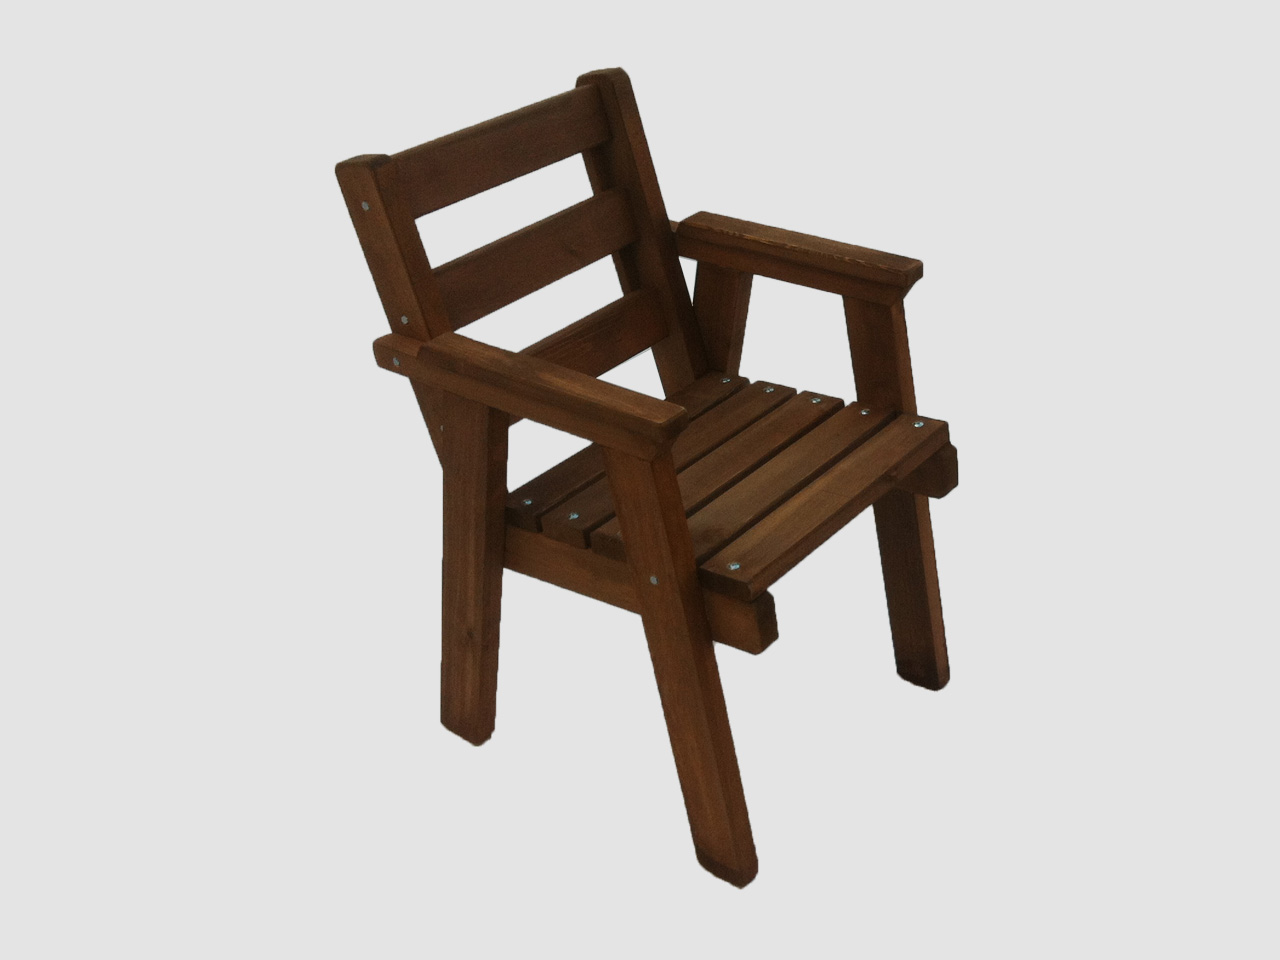 ξυλινη καρεκλα με μπράτσο